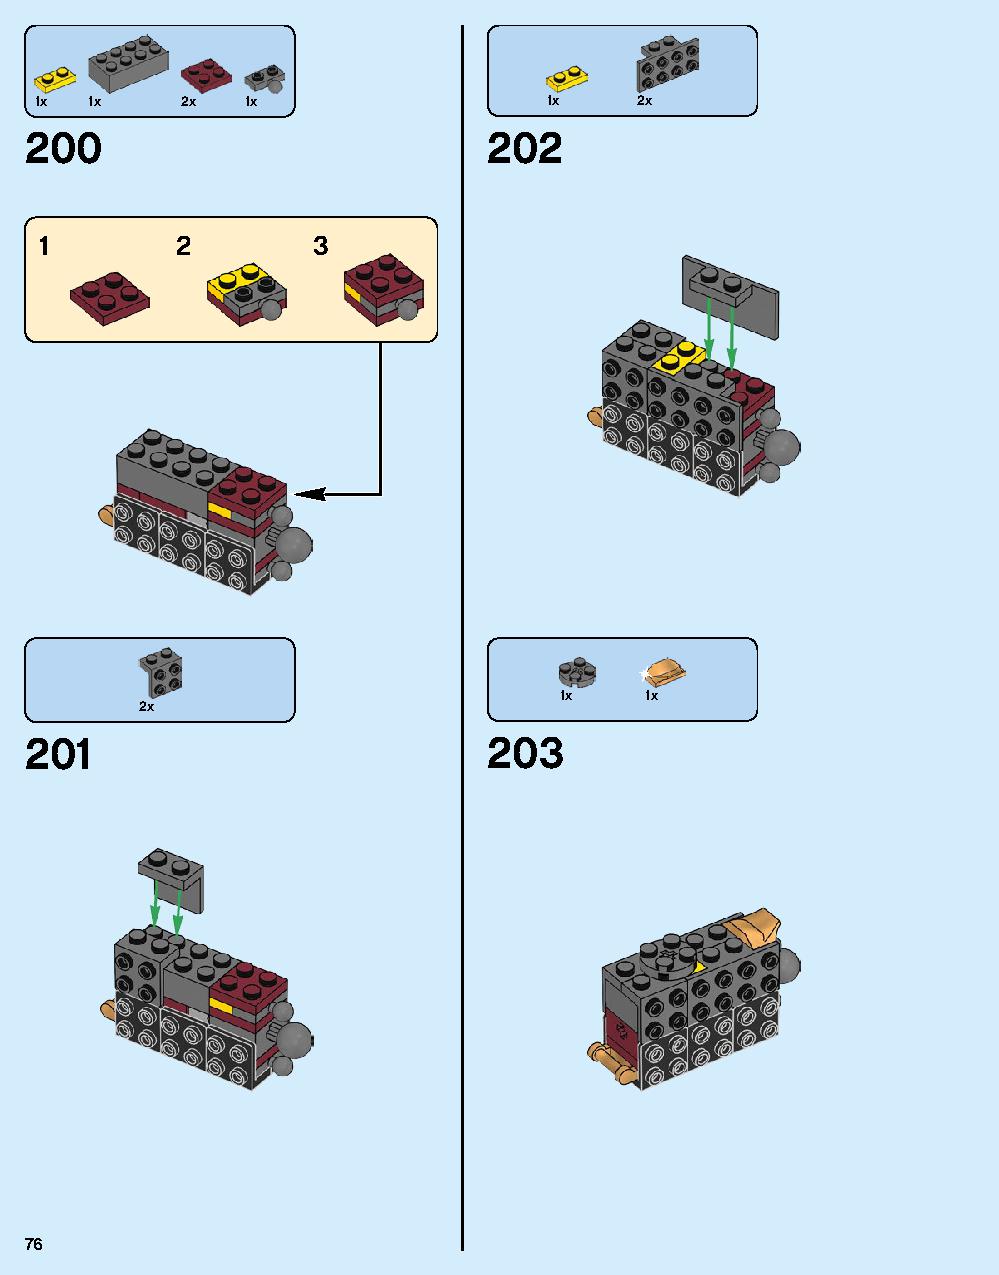 ハルクバスター：ウルトロン・エディション 76105 レゴの商品情報 レゴの説明書・組立方法 76 page